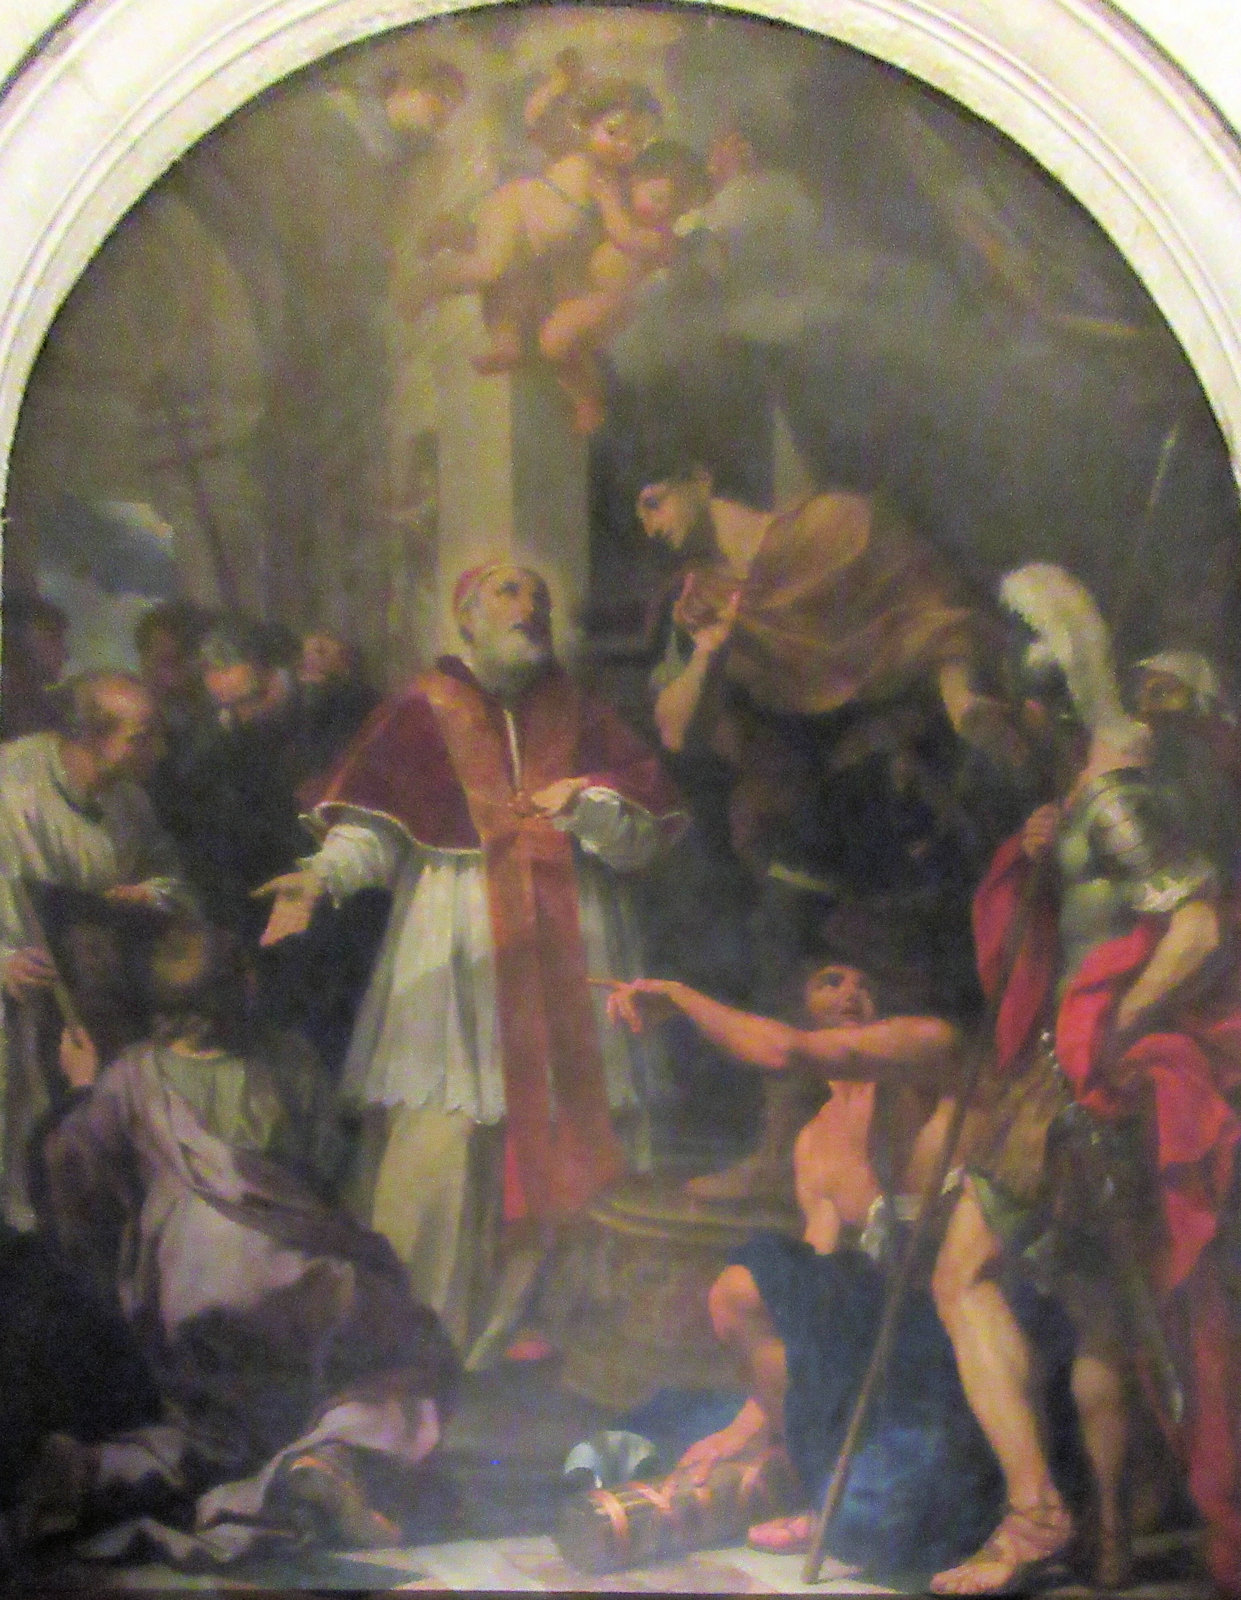 Luigi Garza: Silvester präsentiert Kaiser Konstantin das Bild von Petrus und Paulus, 1675, in der Kirche Santa Croce in Gerusalemme in Rom